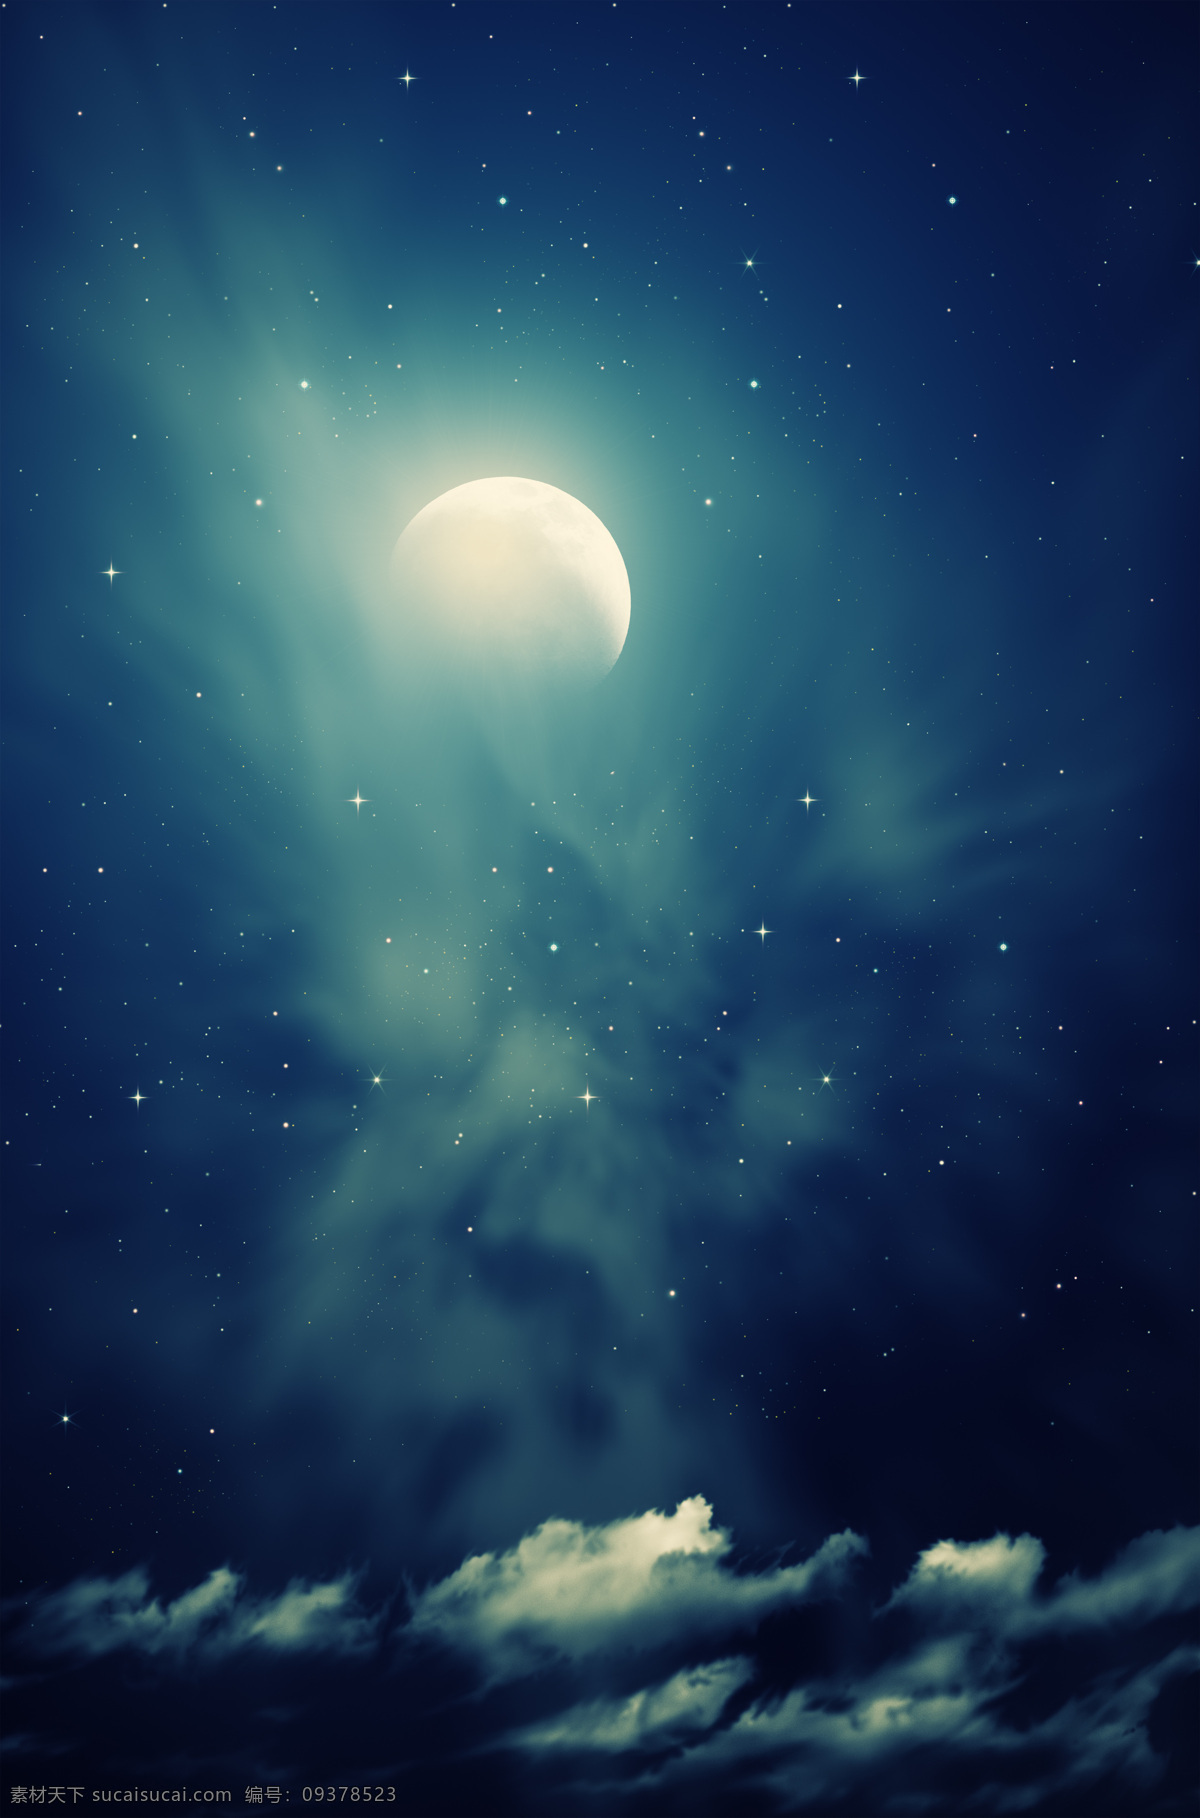 明月夜 月亮 夜晚 星空 星星 月牙 云彩 弯月 梦幻 月光 皎洁 云朵 天空 自然风景 自然景观 自然风景系列